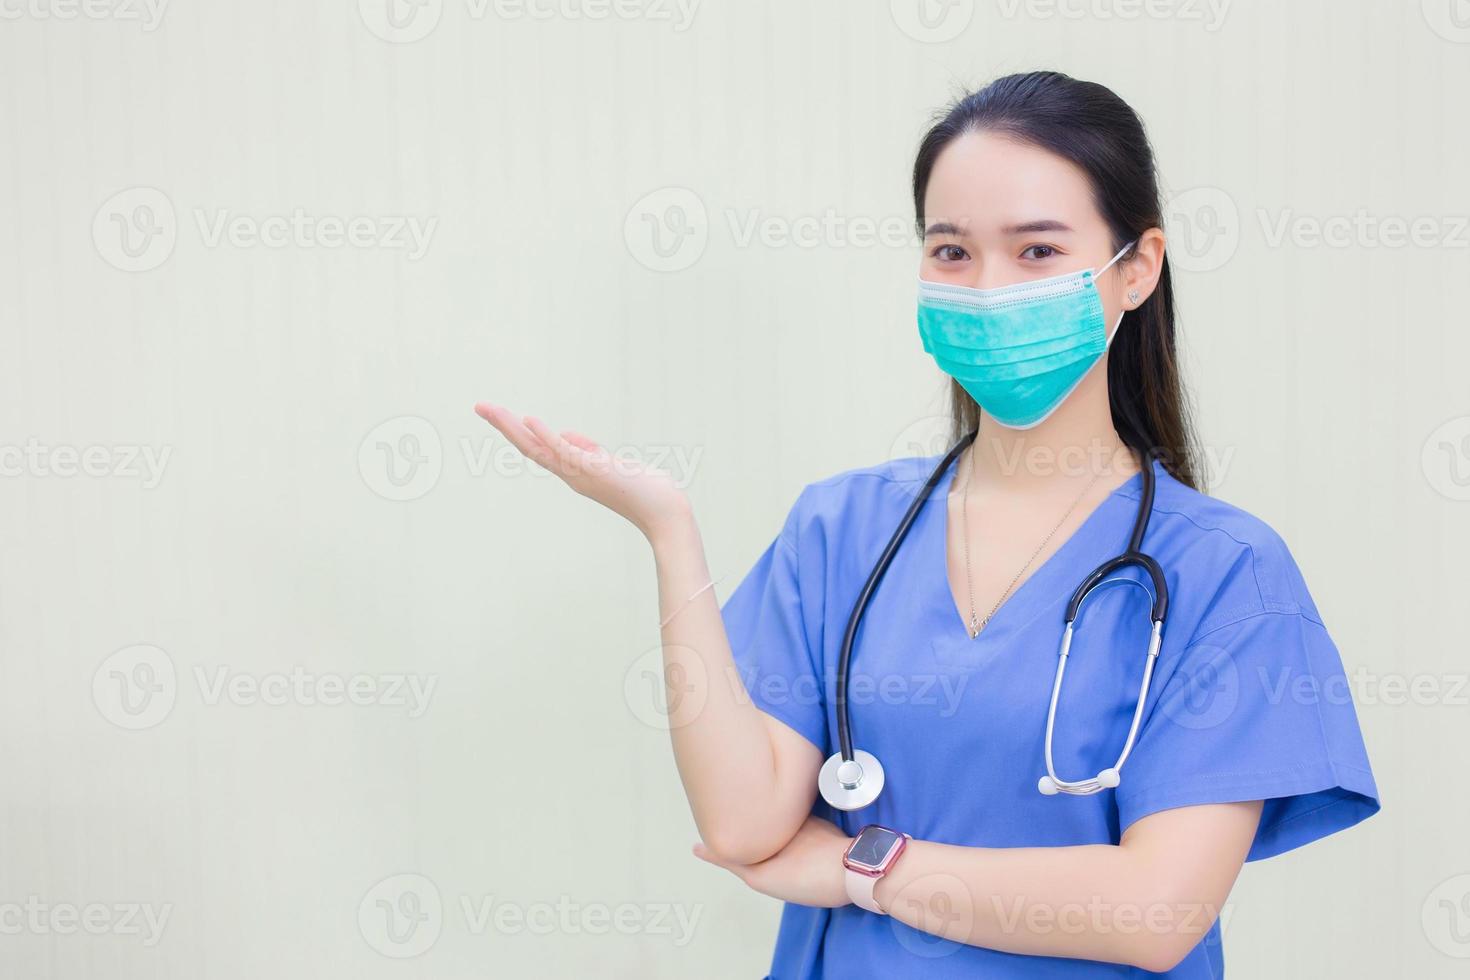 la donna asiatica indossa abbigliamento medico blu e maschera medica per proteggere l'epidemia di coronavirus 2019 covid 19 mentre mostra la sua mano per suggerire qualcosa su sfondo bianco. foto